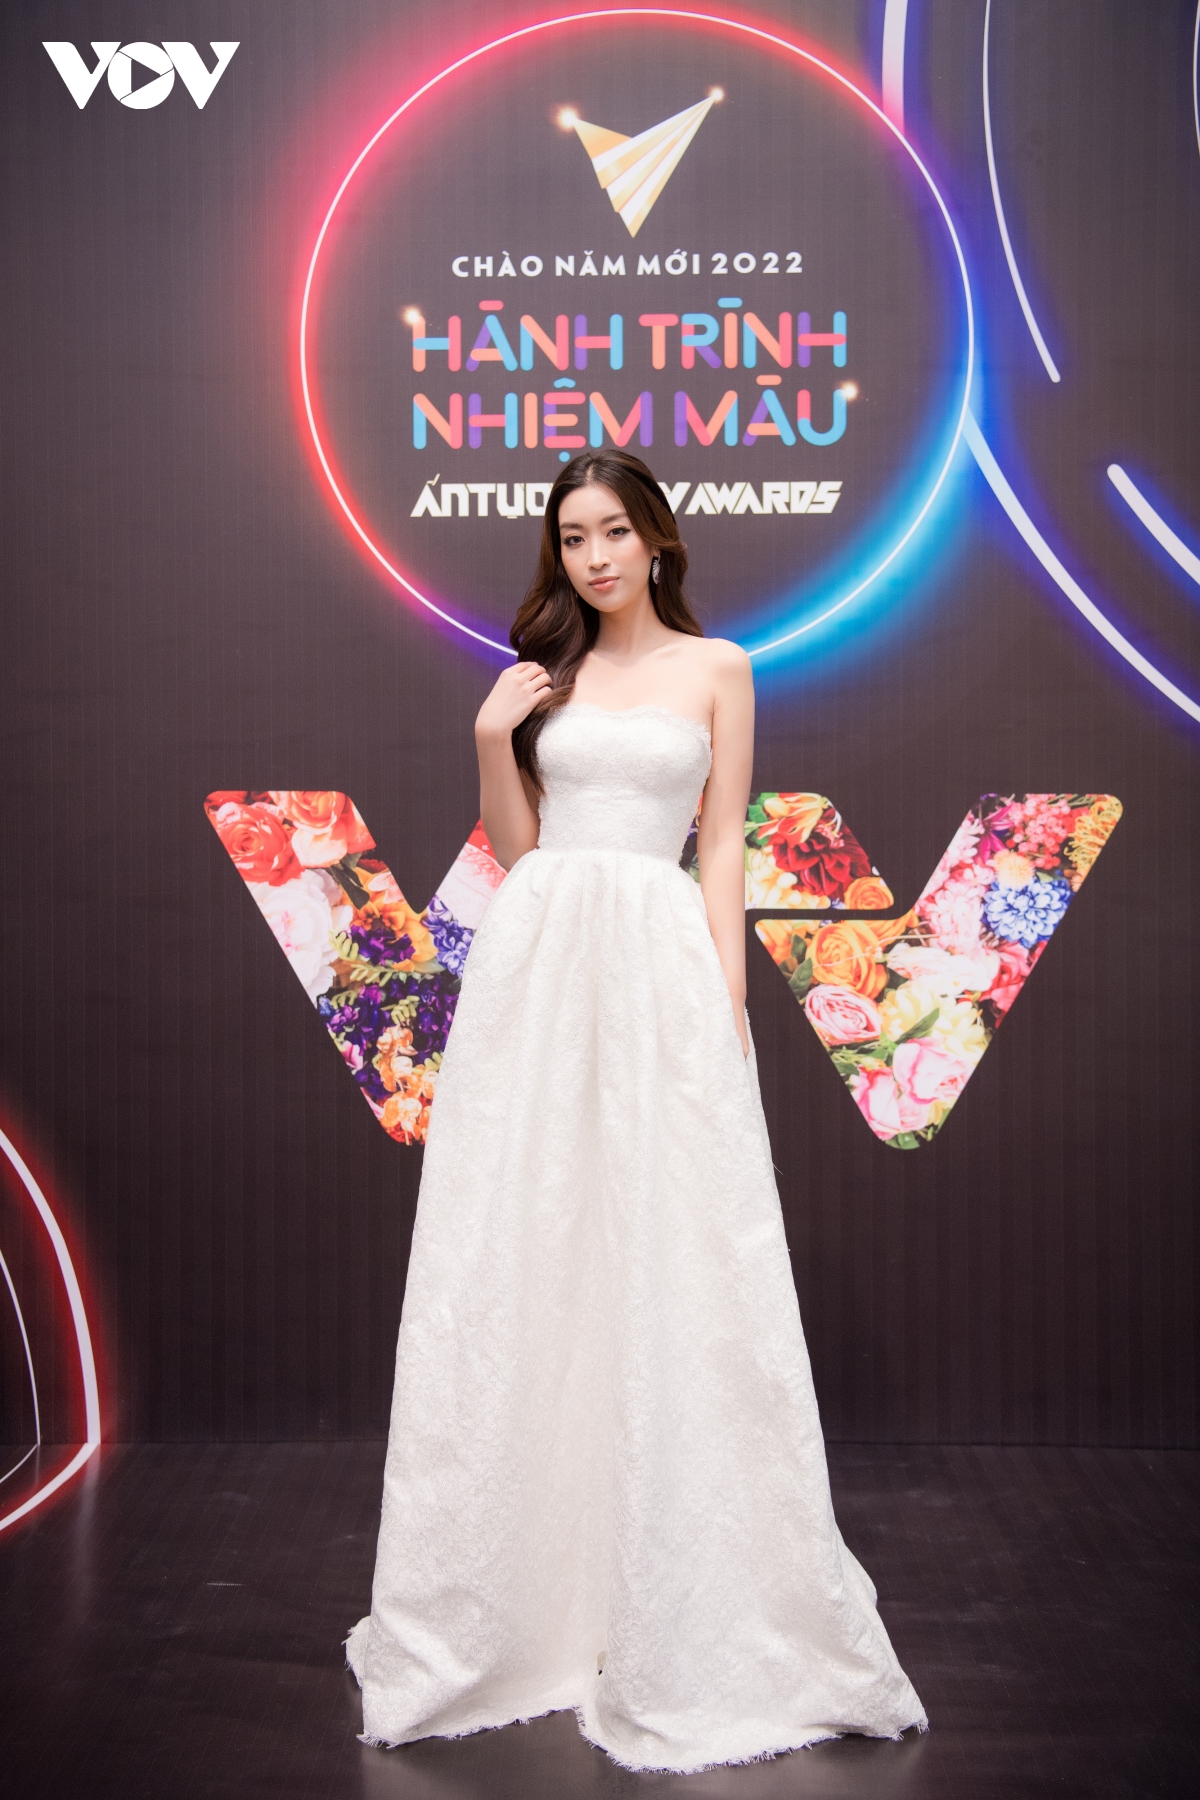 Khả Ngân sát cánh cùng Thanh Sơn tại VTV Awards 2021 - Ảnh 7.